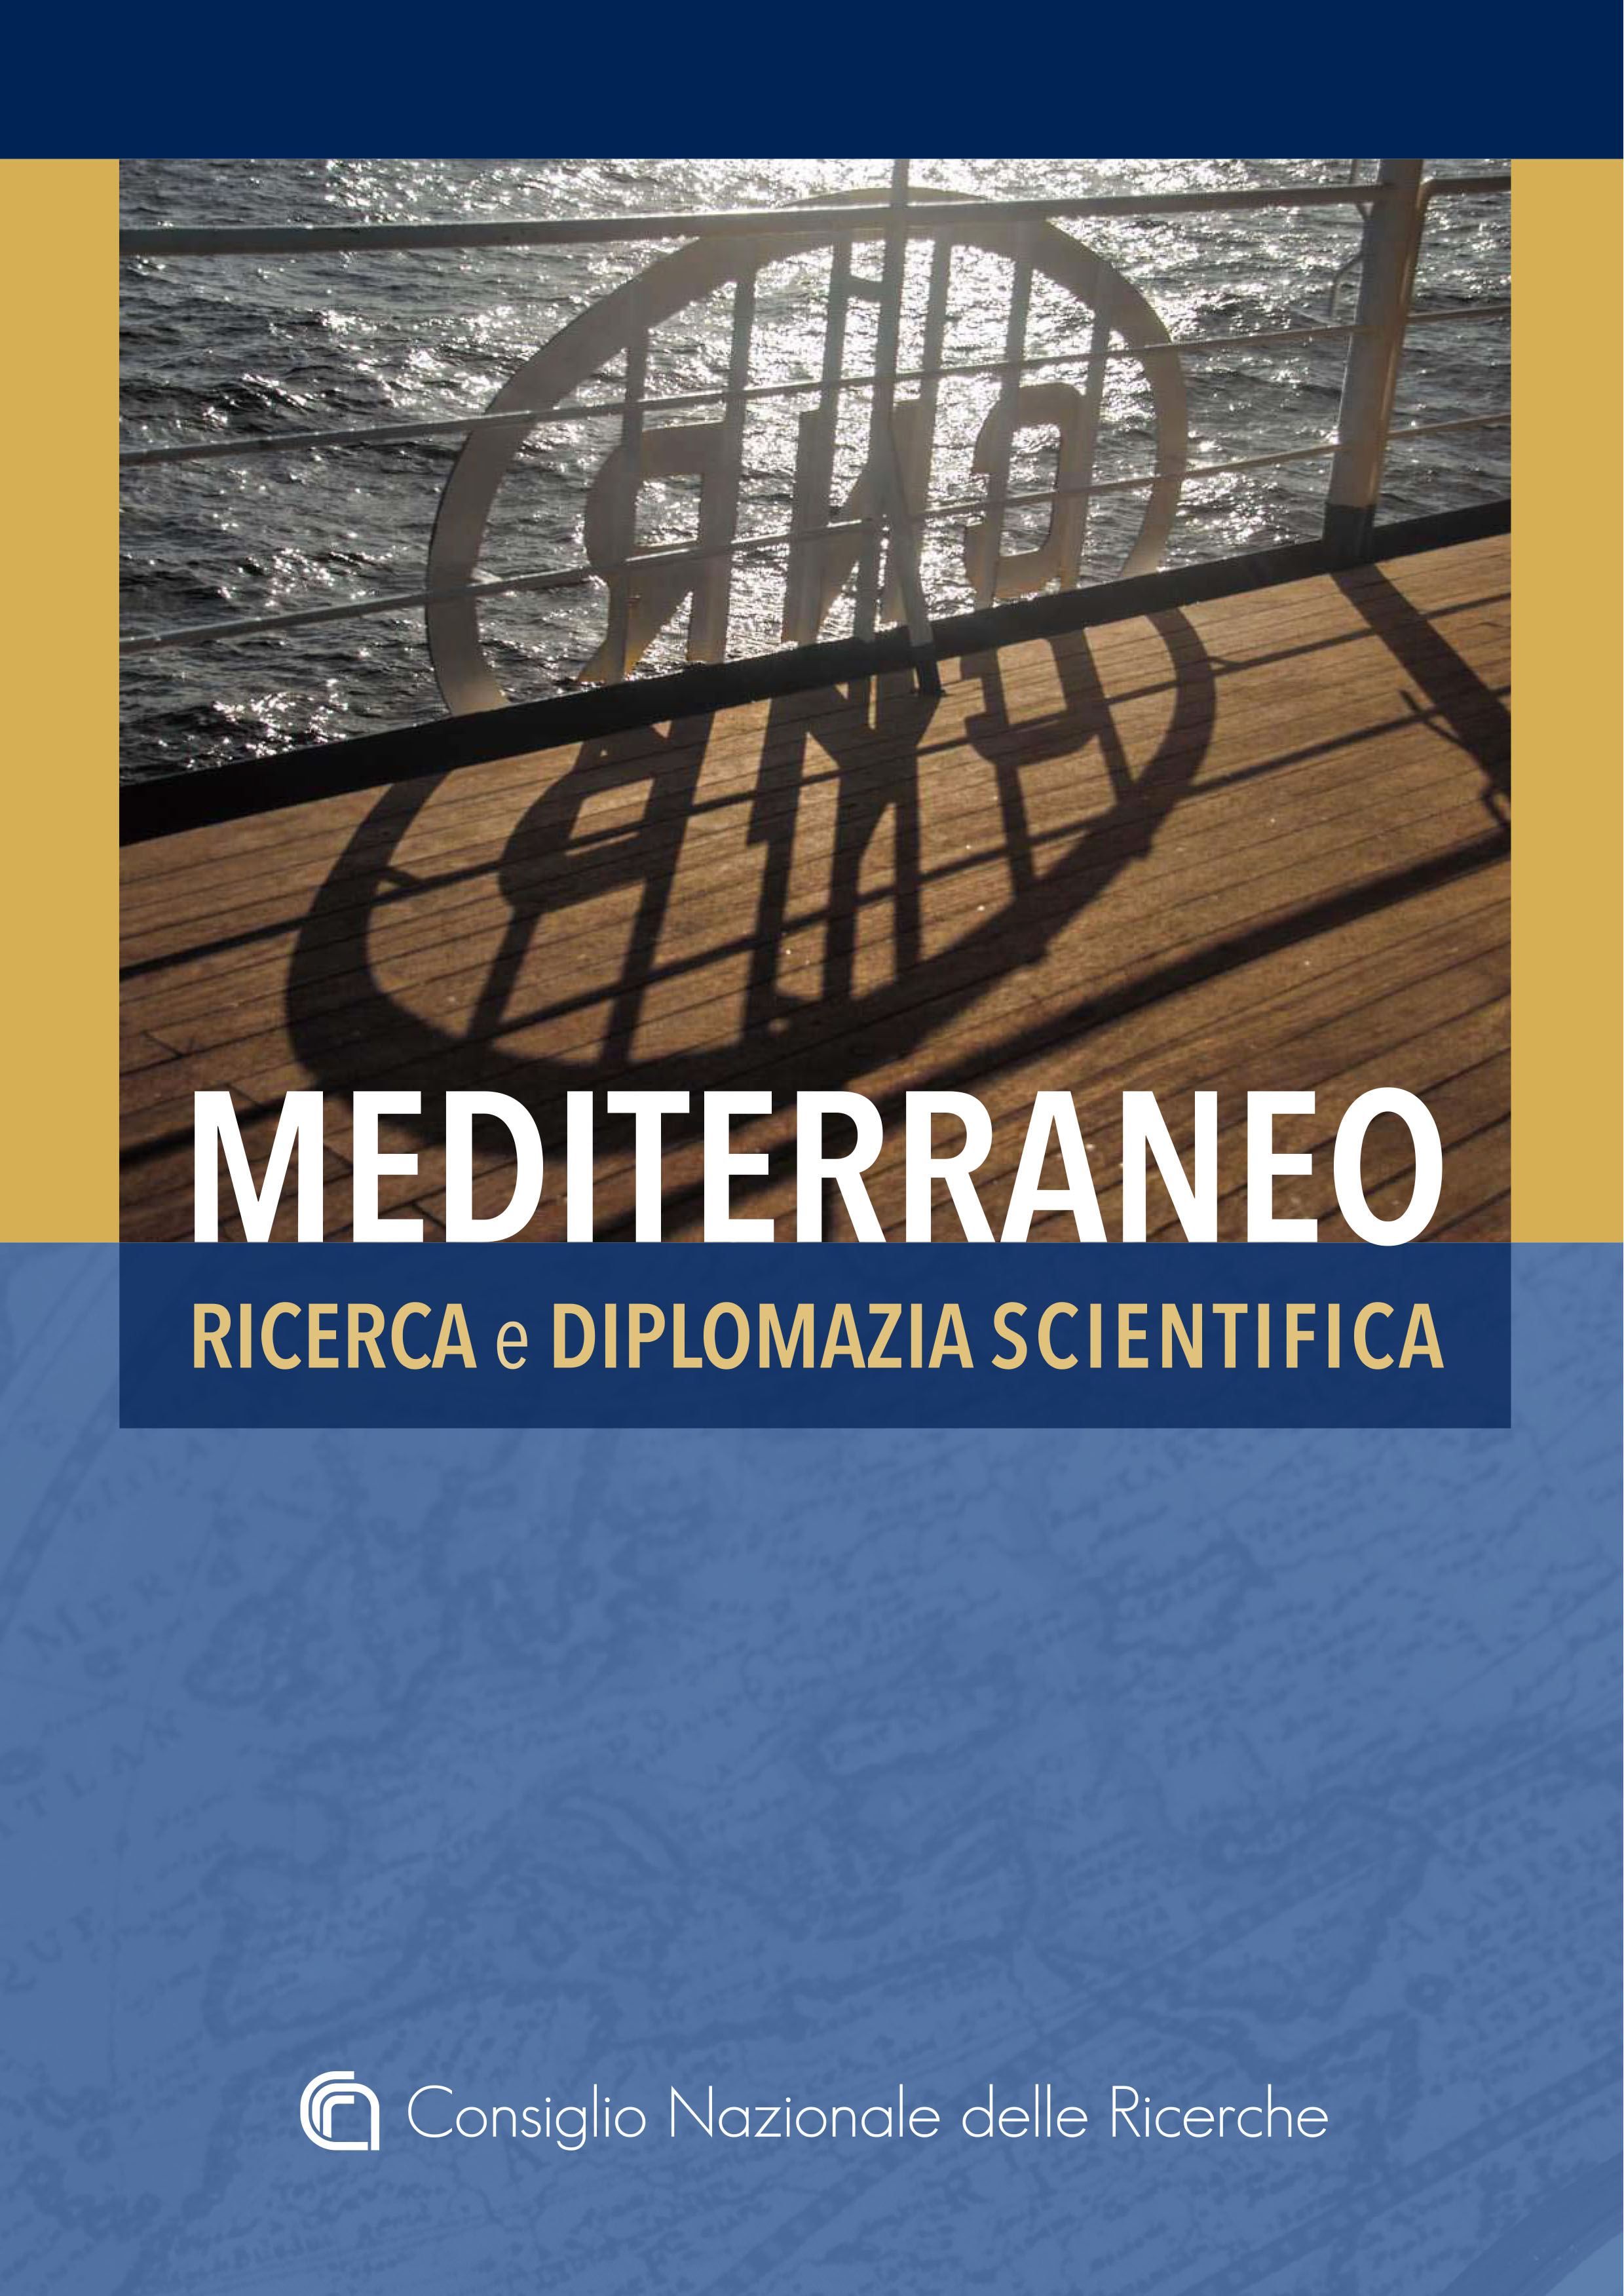 Copertina Libro 'Mediterraneo - Ricerca e Diplomazia scientifica'